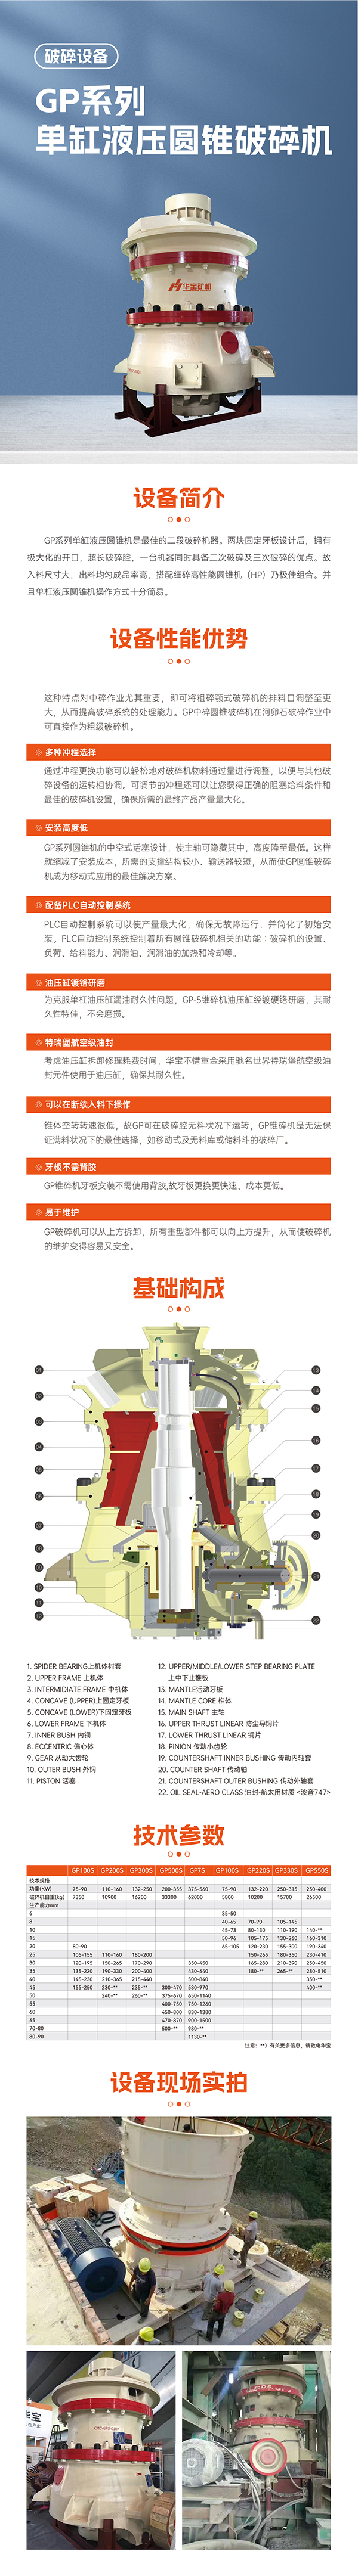 华宝矿机GP系单缸液压圆锥机设备技术参数